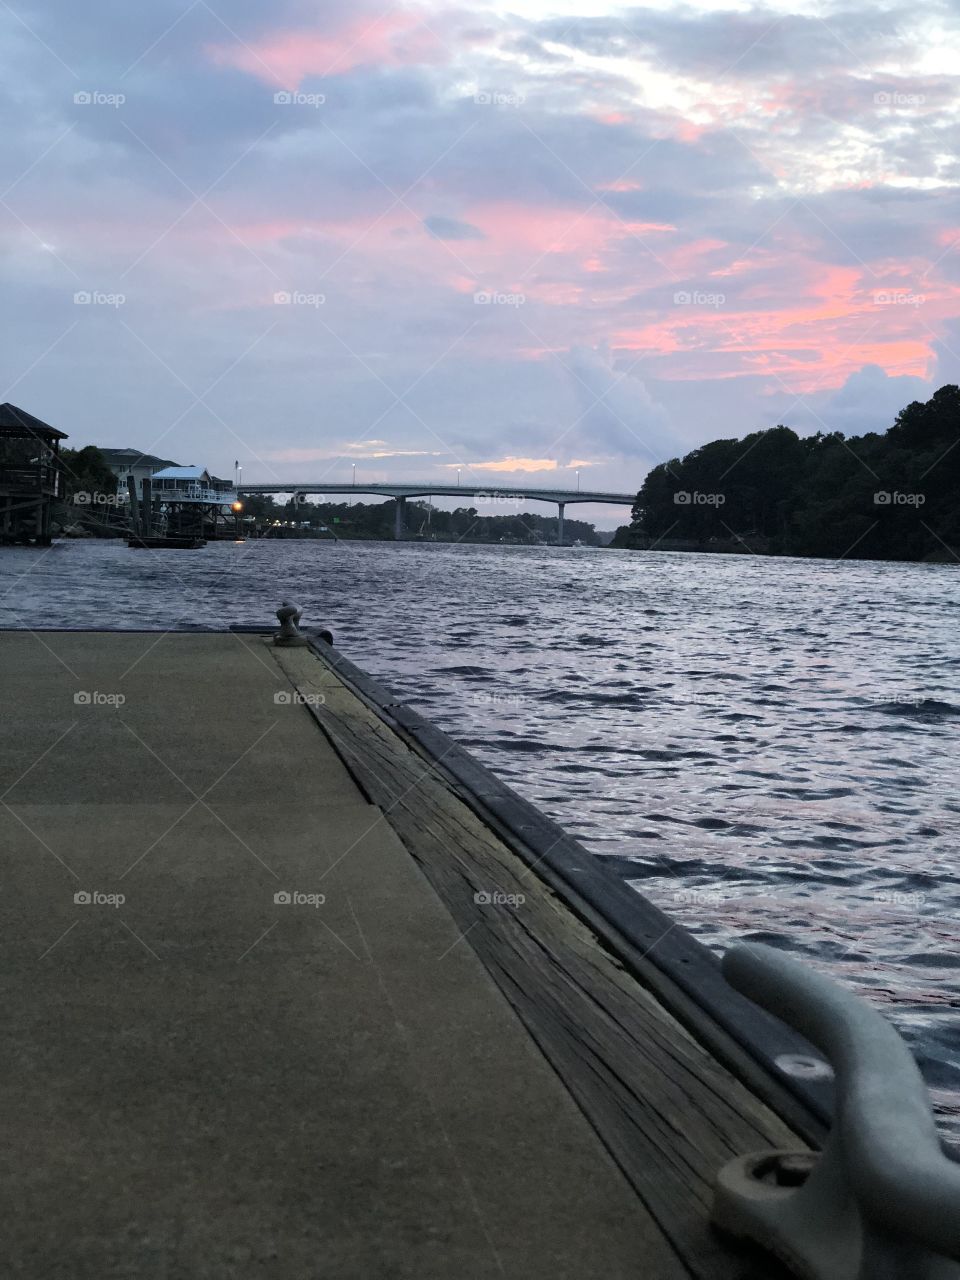 Sunset dock waterway 